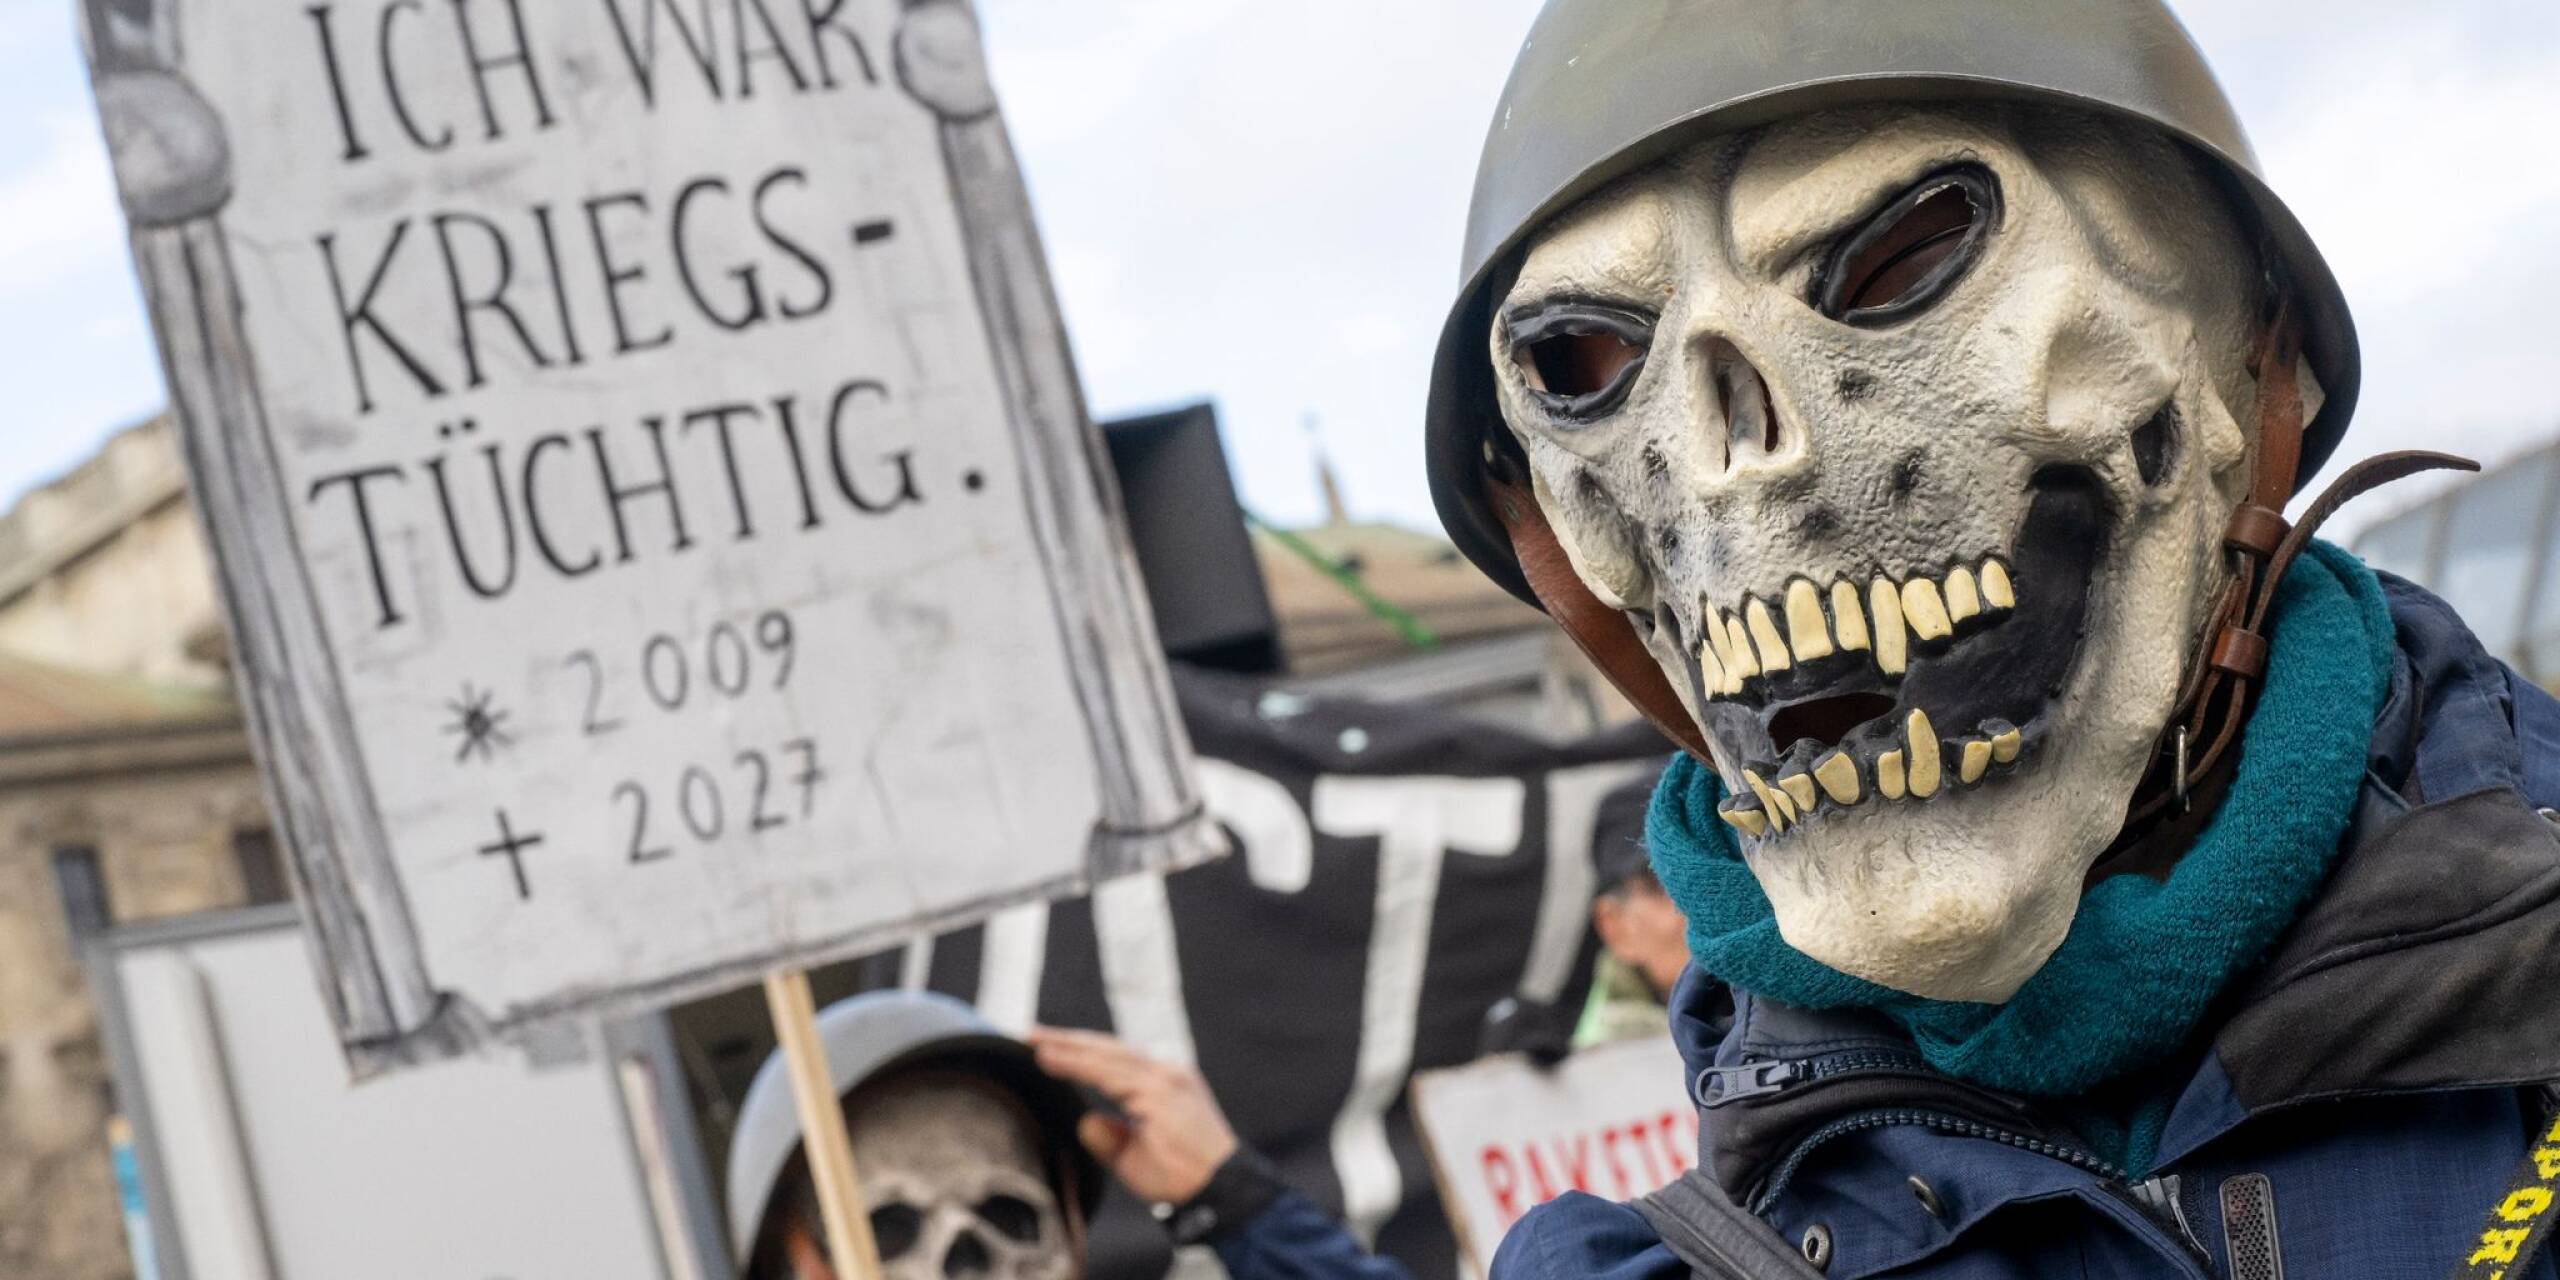 Tausende Menschen haben anlässlich der Münchner Sicherheitskonferenz für Frieden in der Welt und gegen Missstände in einzelnen Regionen demonstriert. Einige setzten sich dafür sogar Masken auf.